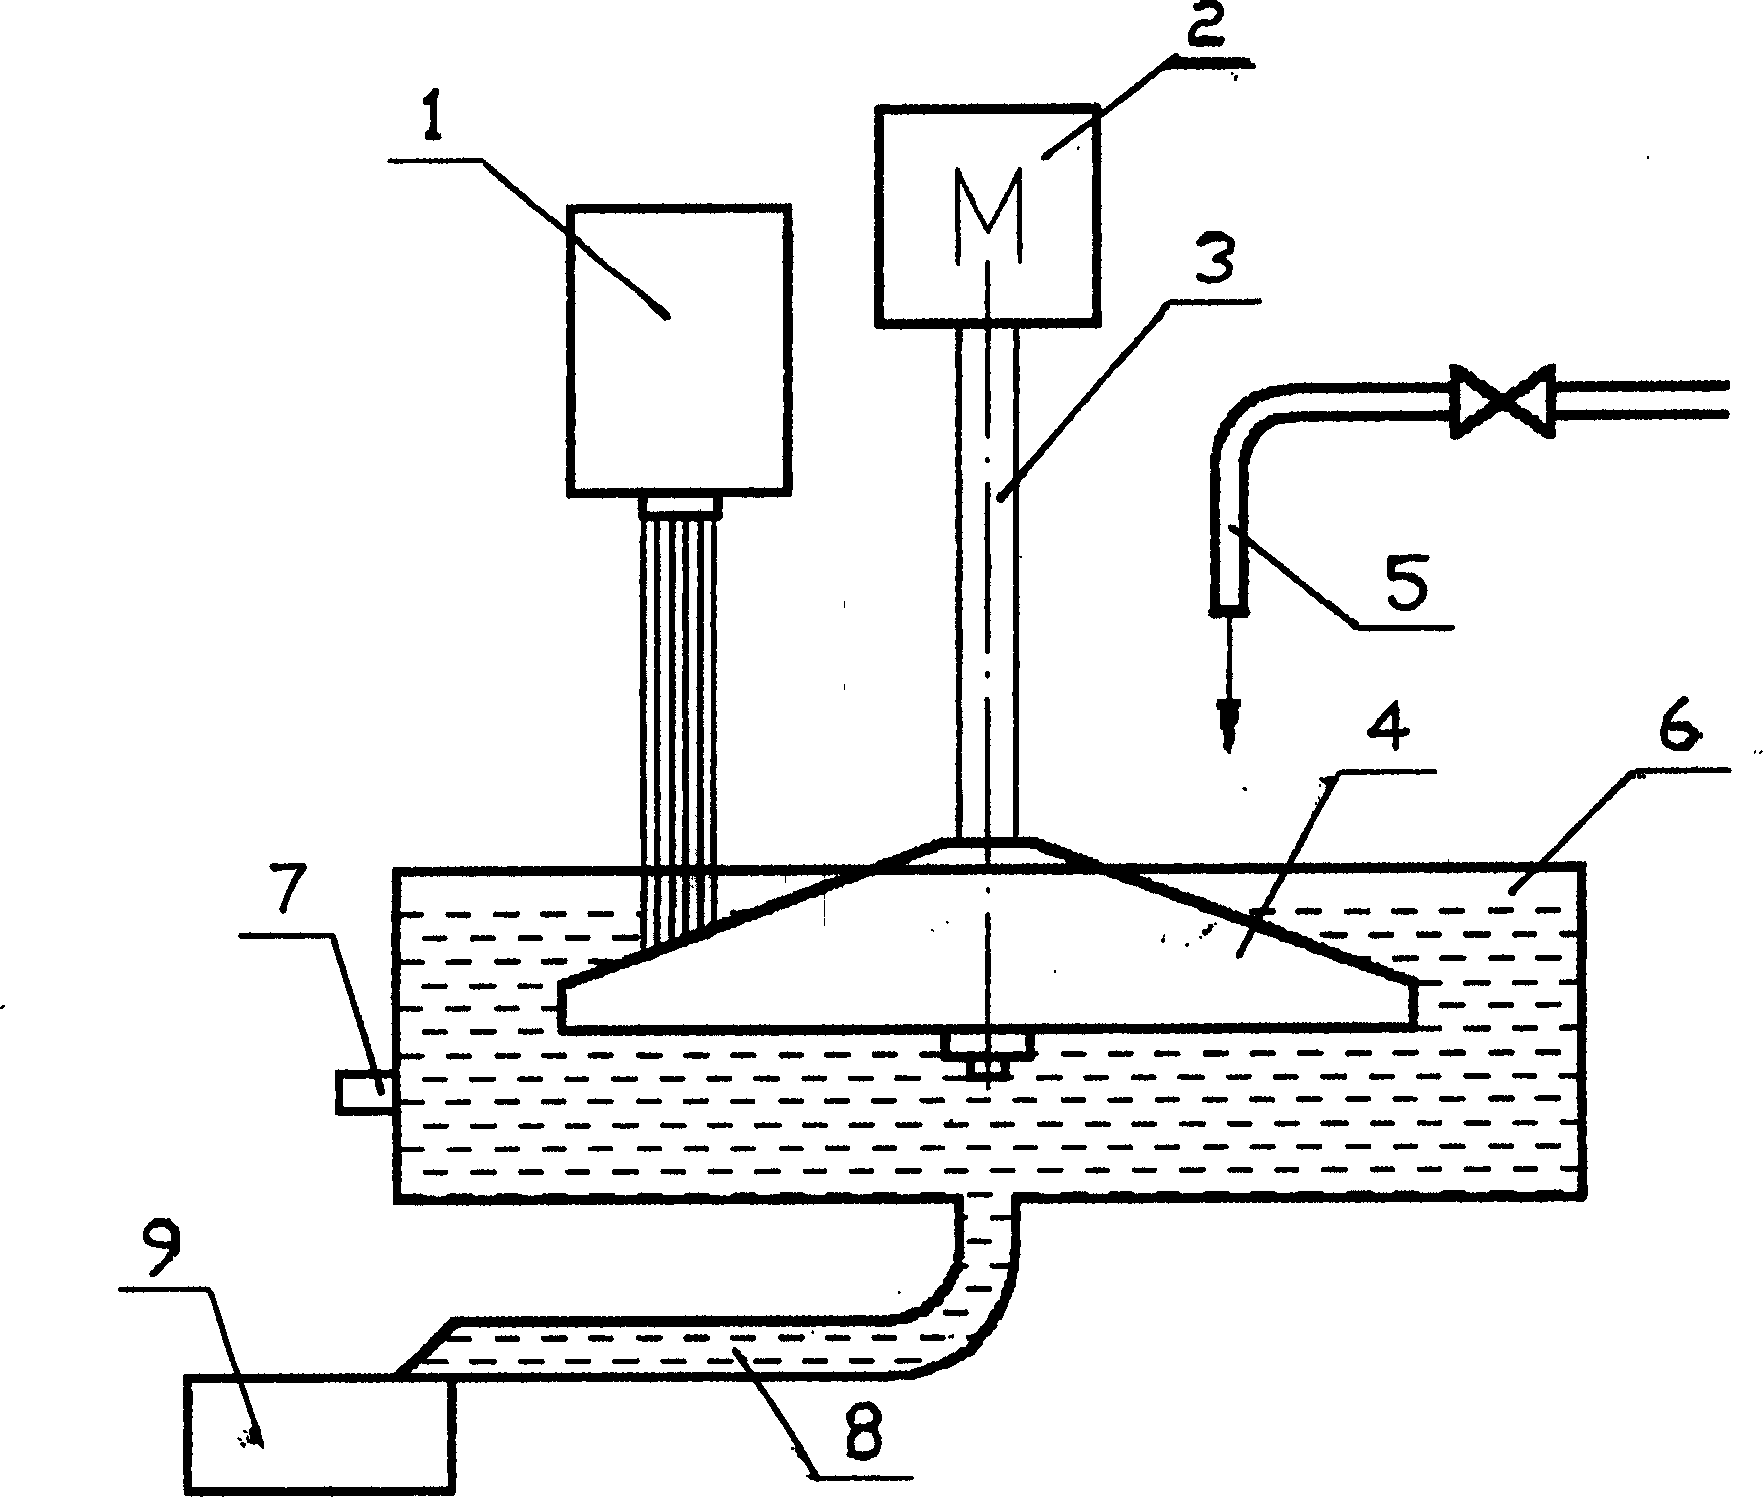 Method of pelletizing high temperature alloy liquid